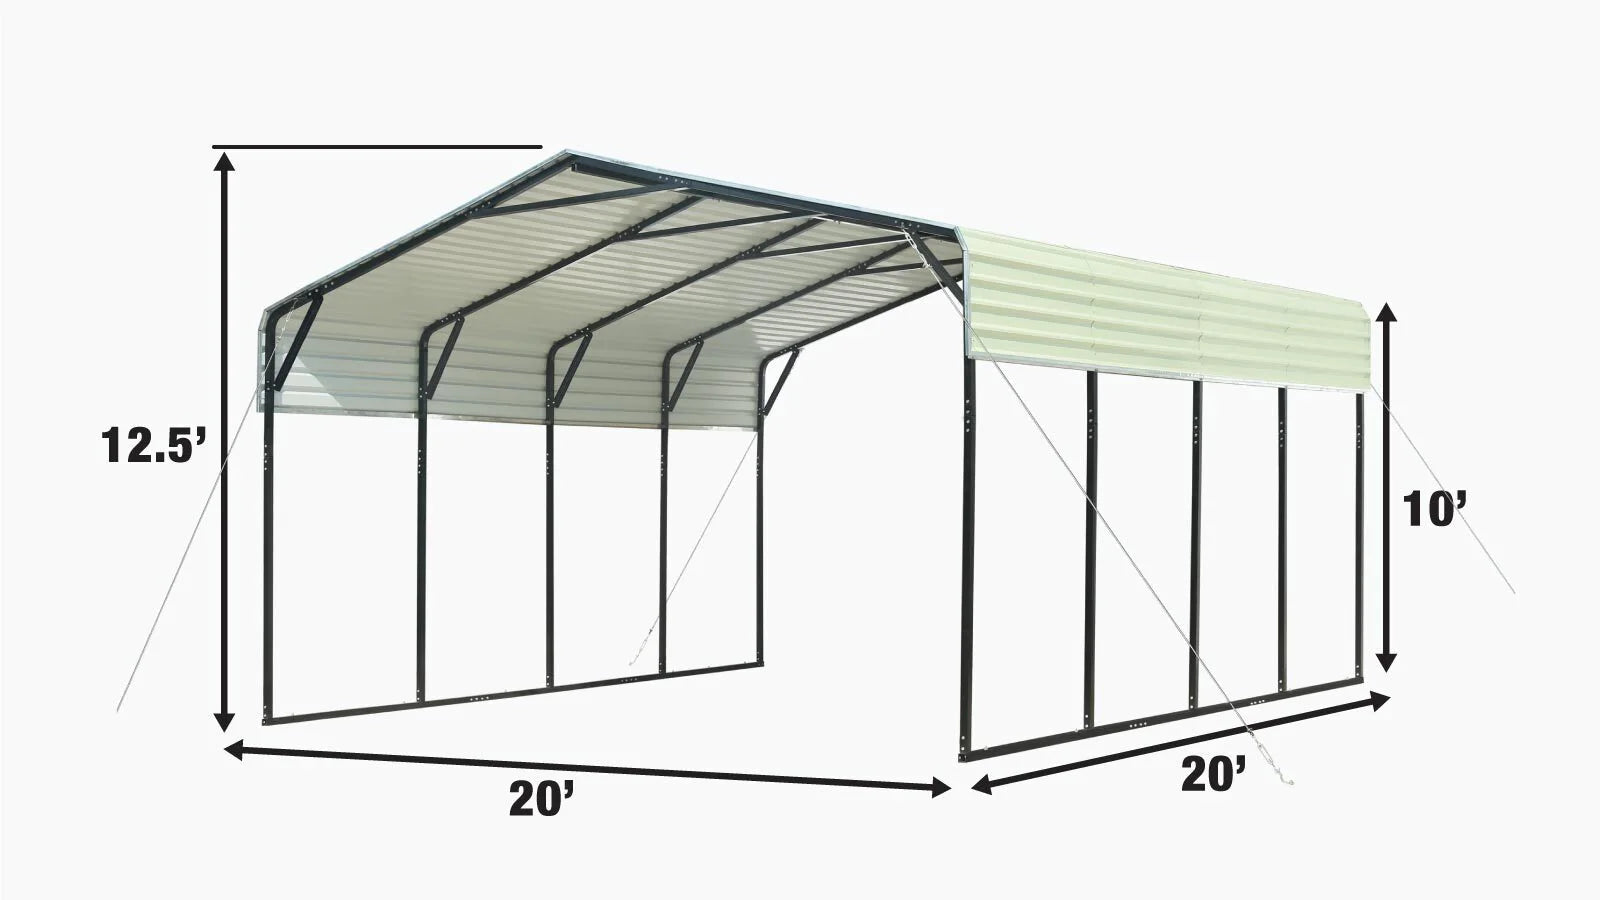 TMG Industrial 20' x 20' Carport tout en acier avec parois latérales ouvertes de 10', toit galvanisé, revêtement en poudre, revêtement de peinture polyester, câbles de stabilisation, TMG-CP2020-specifications-image